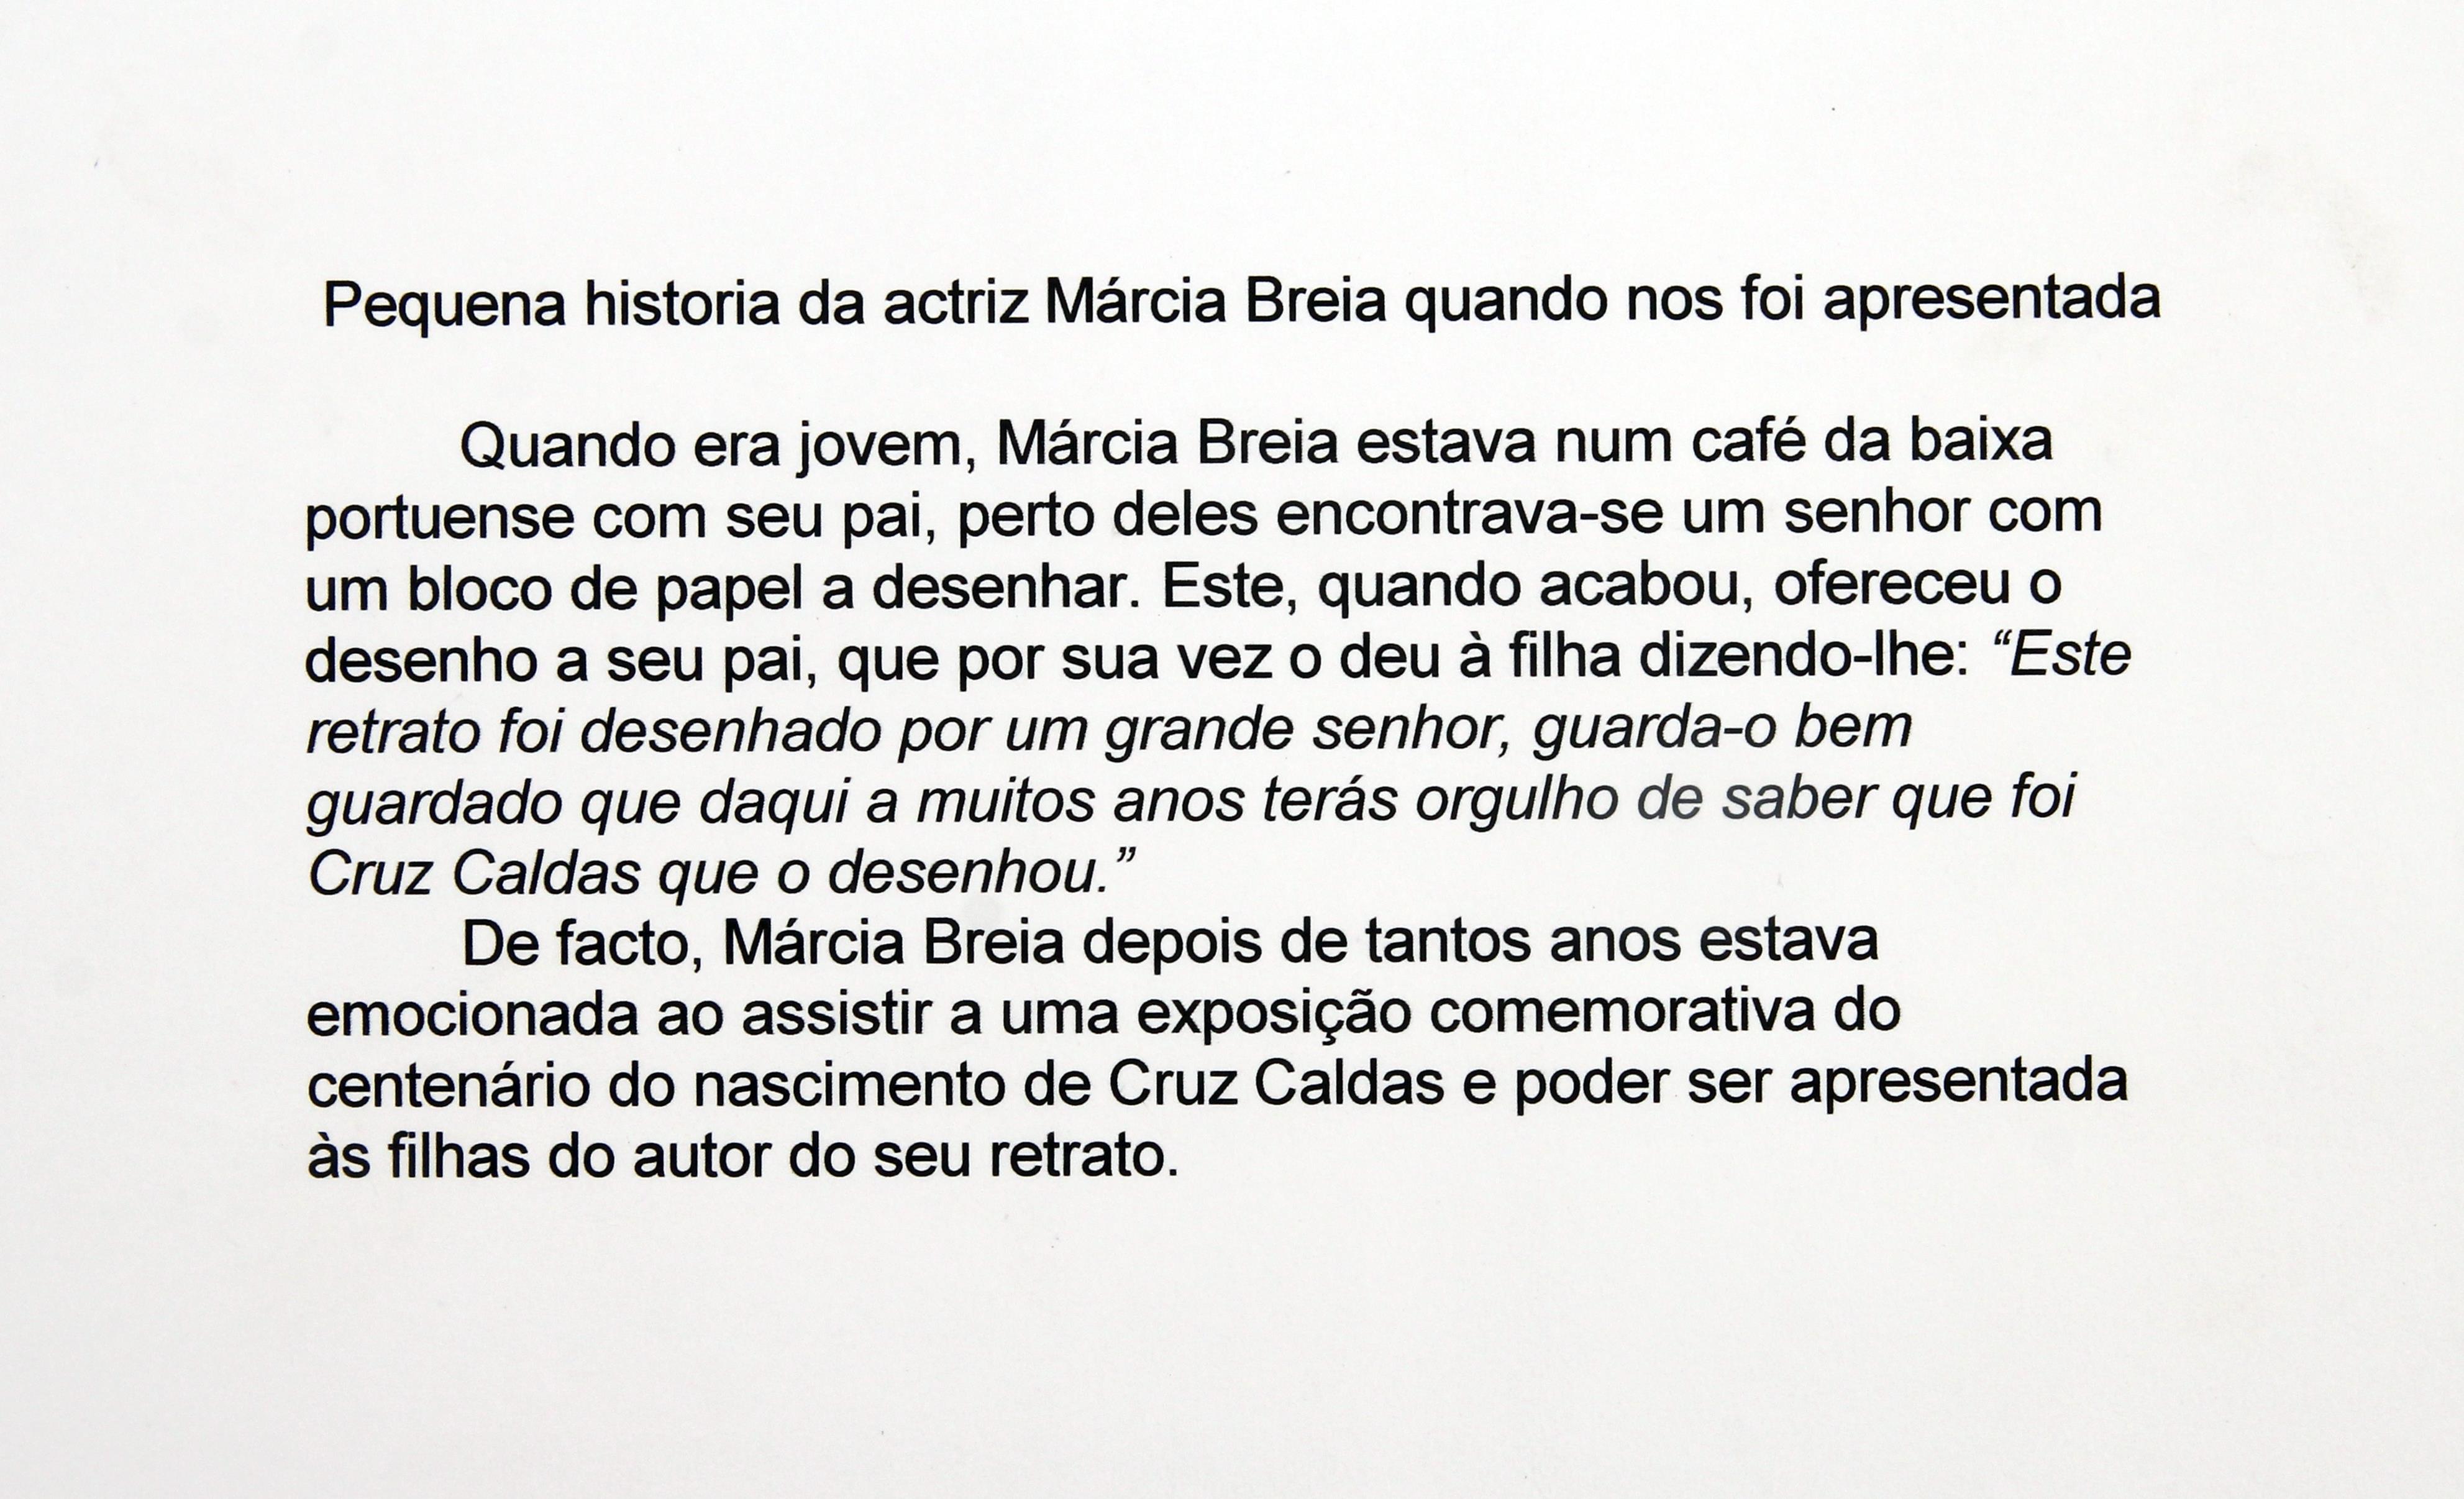 3ª Exposição "Documental" póstuma : «Cruz Caldas : Caricaturista e Ilustrador» : pequena história da atriz Márcia Breia quando nos foi apresentada